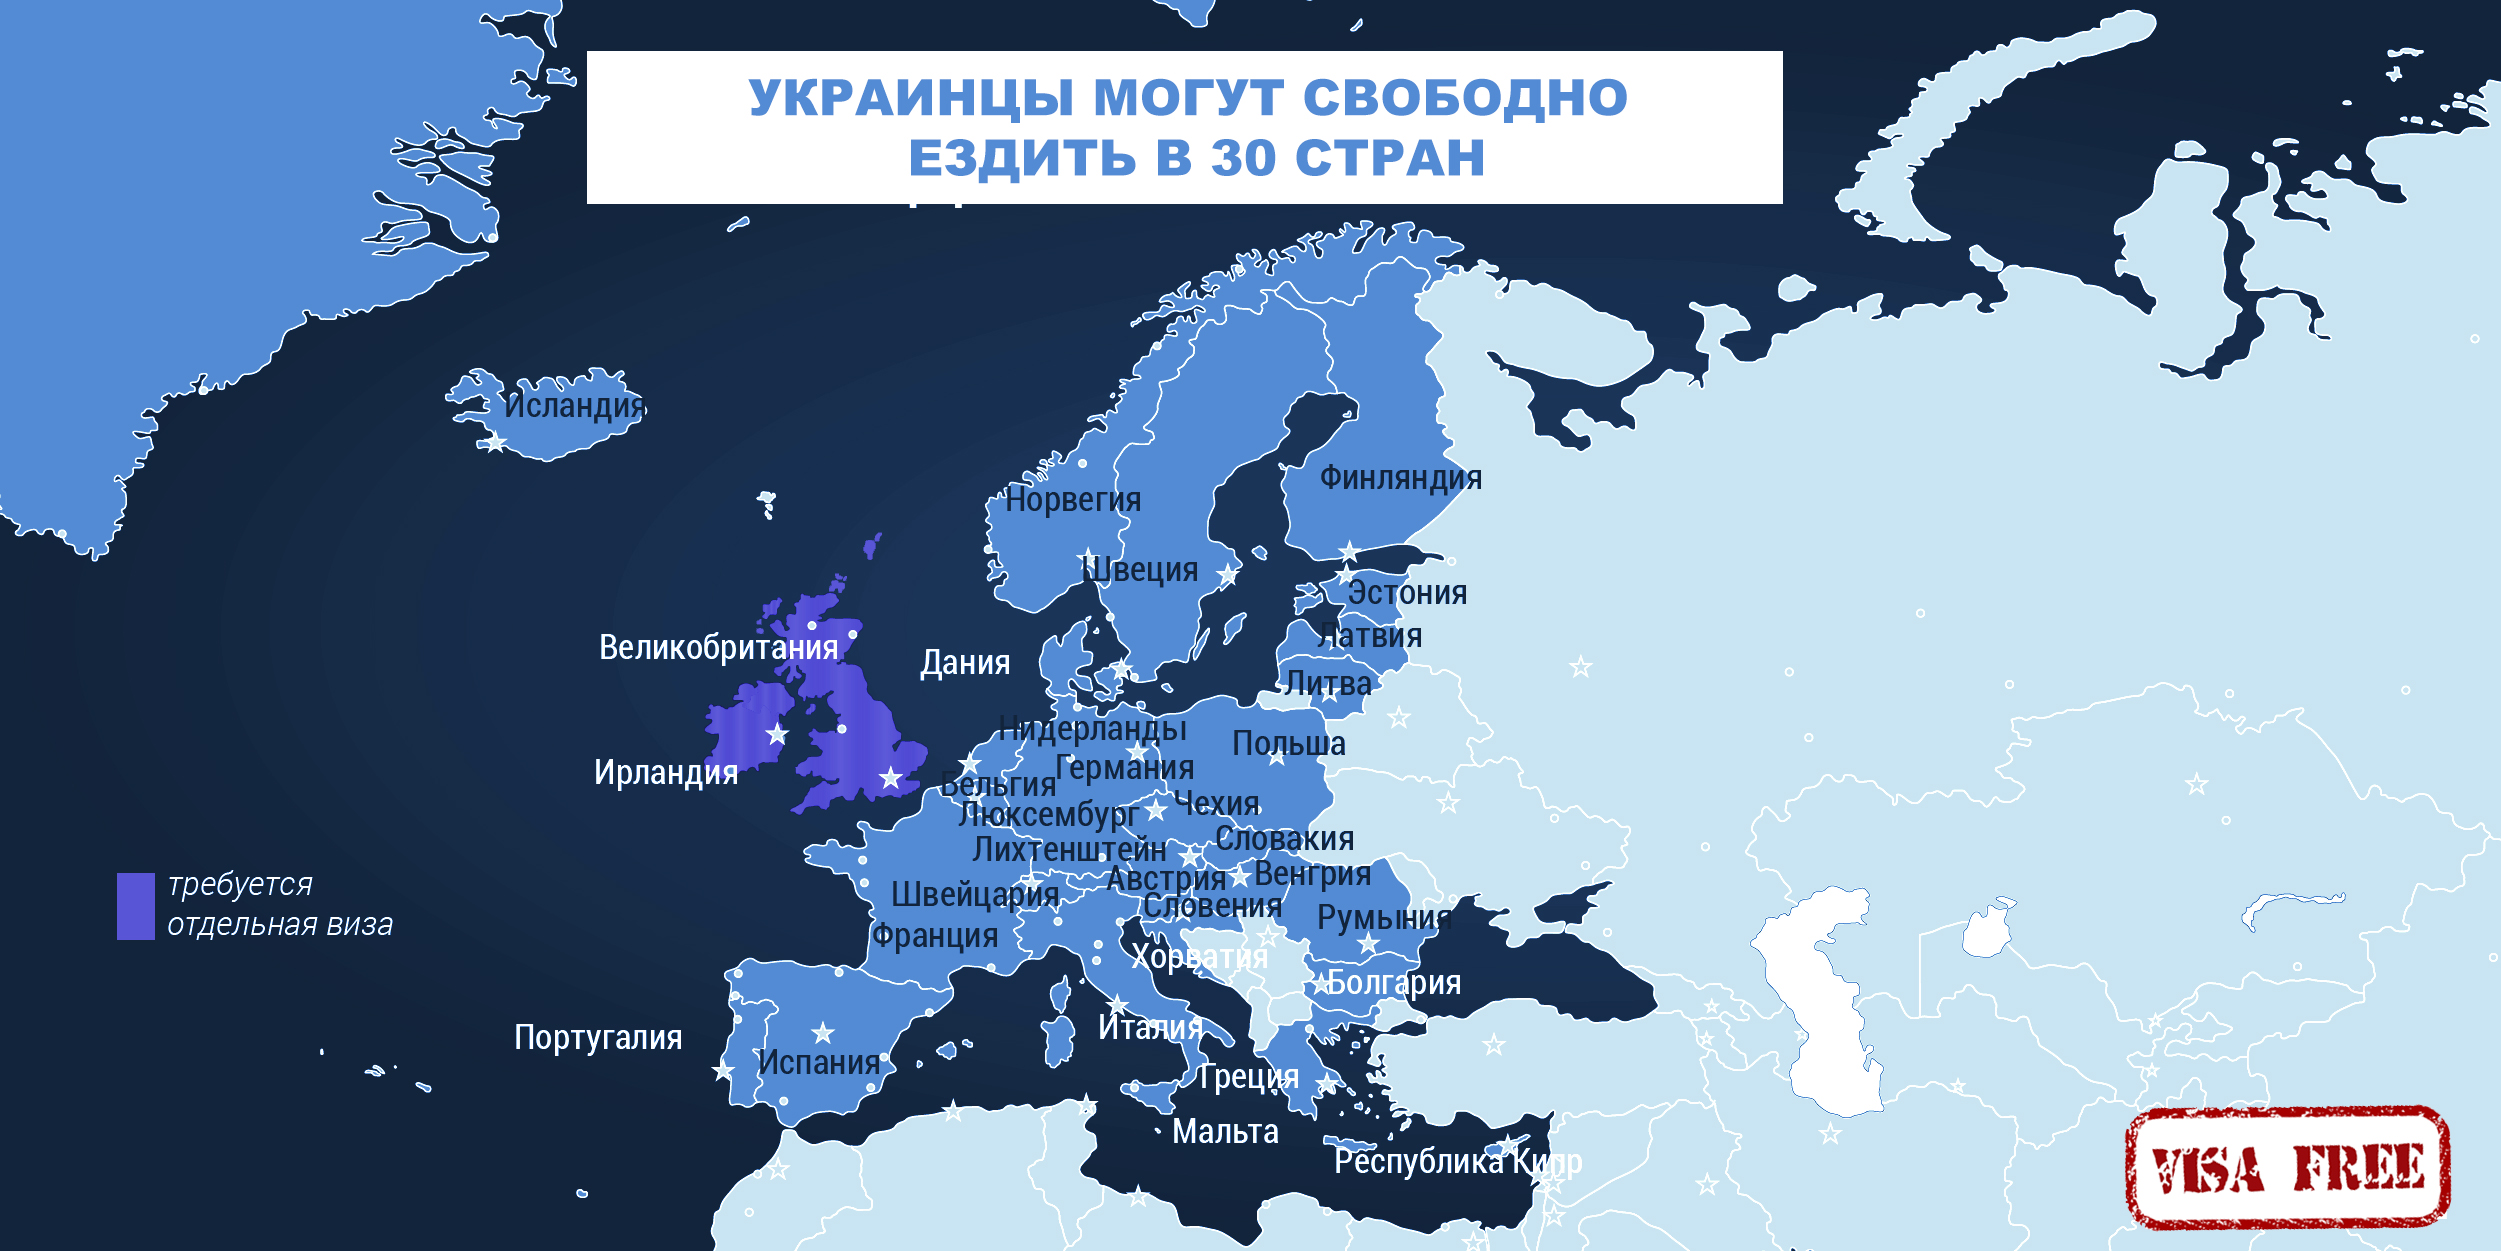 Крім них, громадяни України можуть відвідати без віз по біометричного паспорту Ісландію, Ліхтенштейн, Швейцарію та Норвегію, які не входять до ЄС, але входять в Шенгенську зону